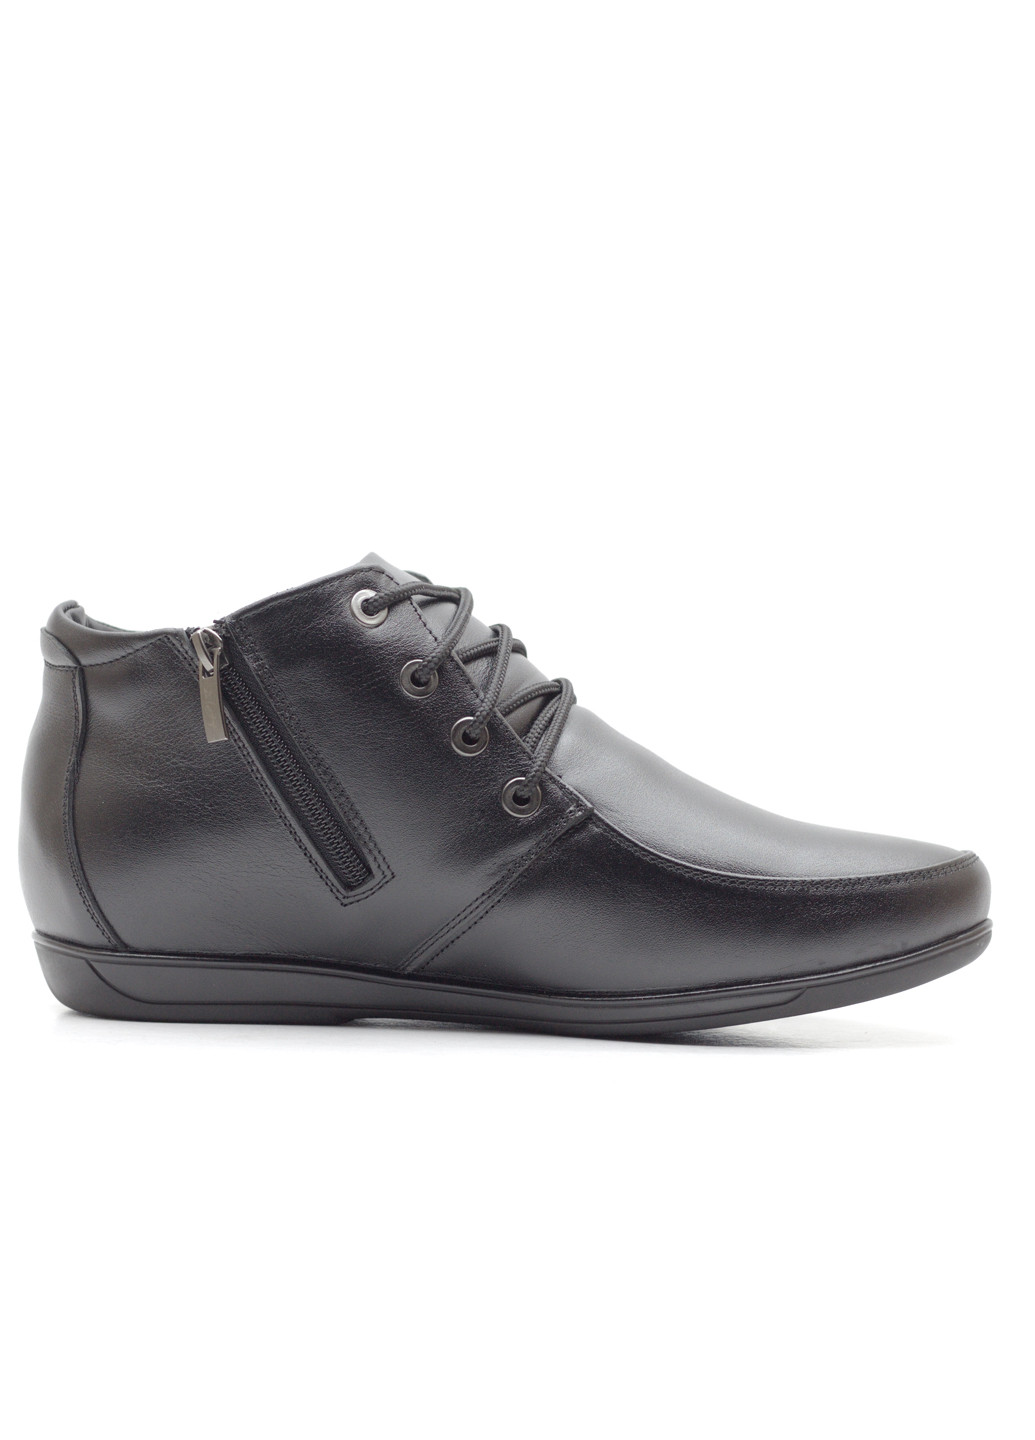 Черные зимние ботинки мужские из натуральной кожи Zlett